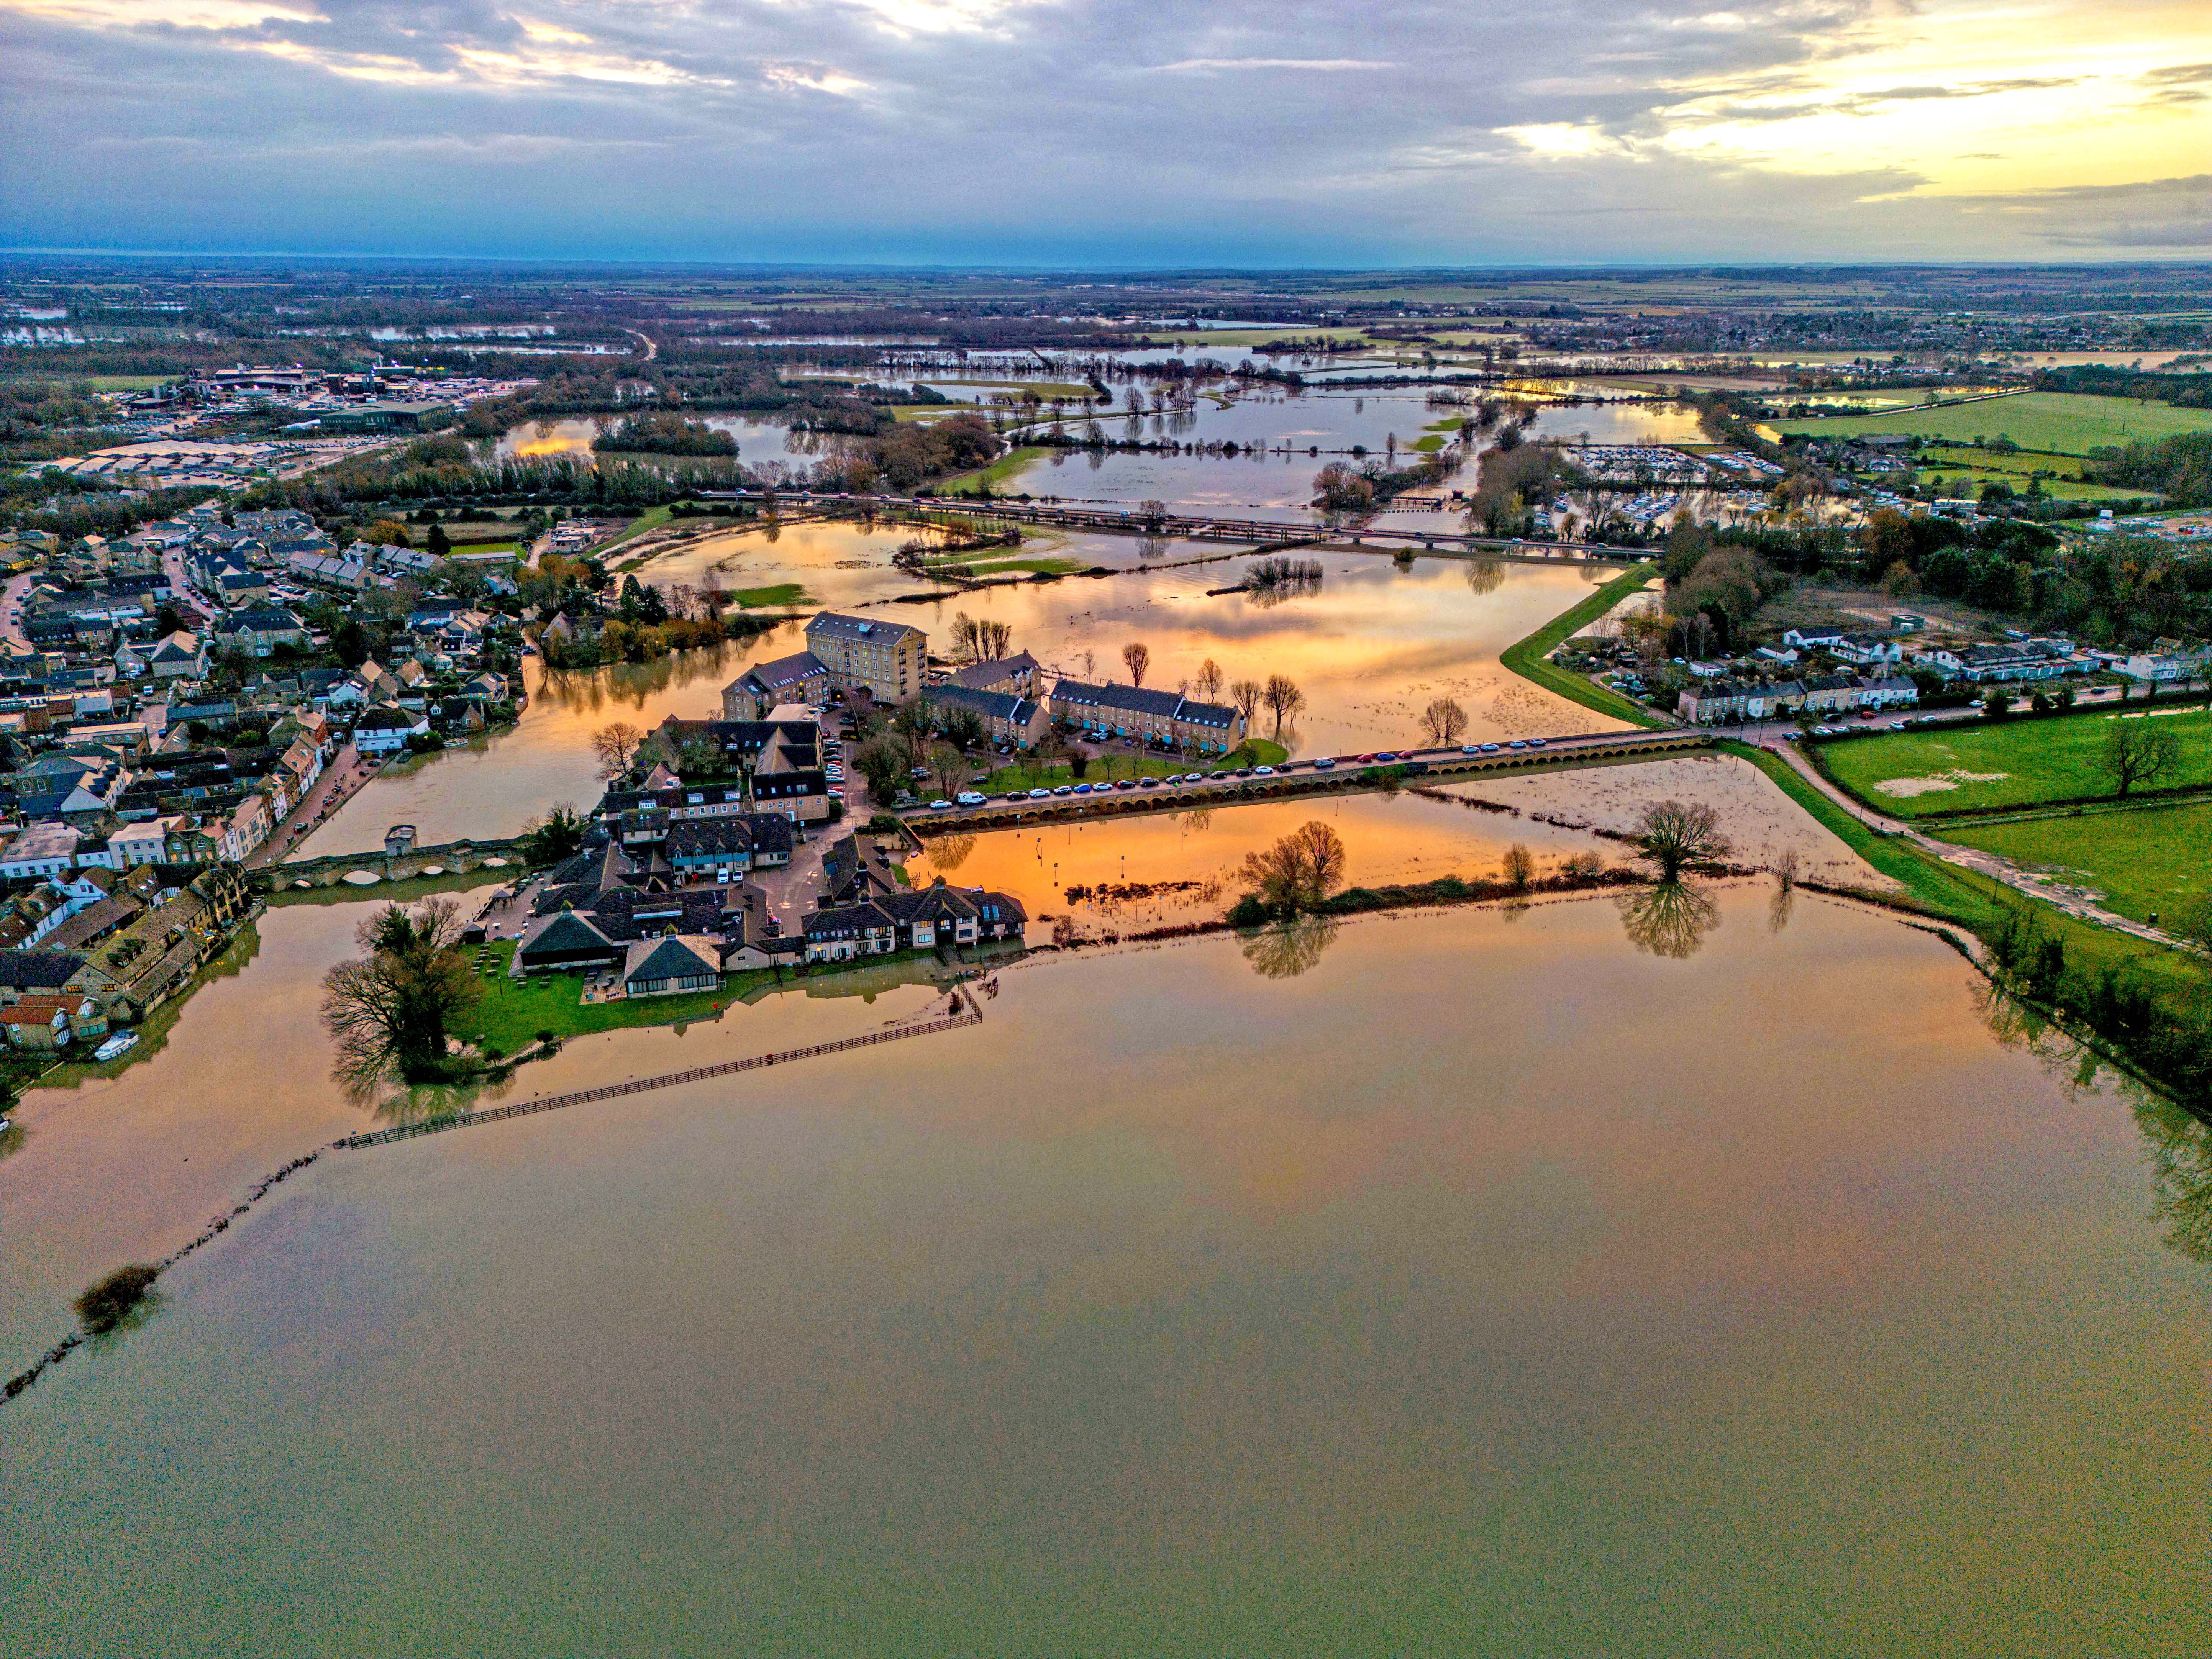 Überschwemmungen haben heute Morgen die Stadt St. Ives in Cambridgeshire heimgesucht, nachdem der Fluss Ouse nach jüngsten heftigen Regenfällen über die Ufer getreten war